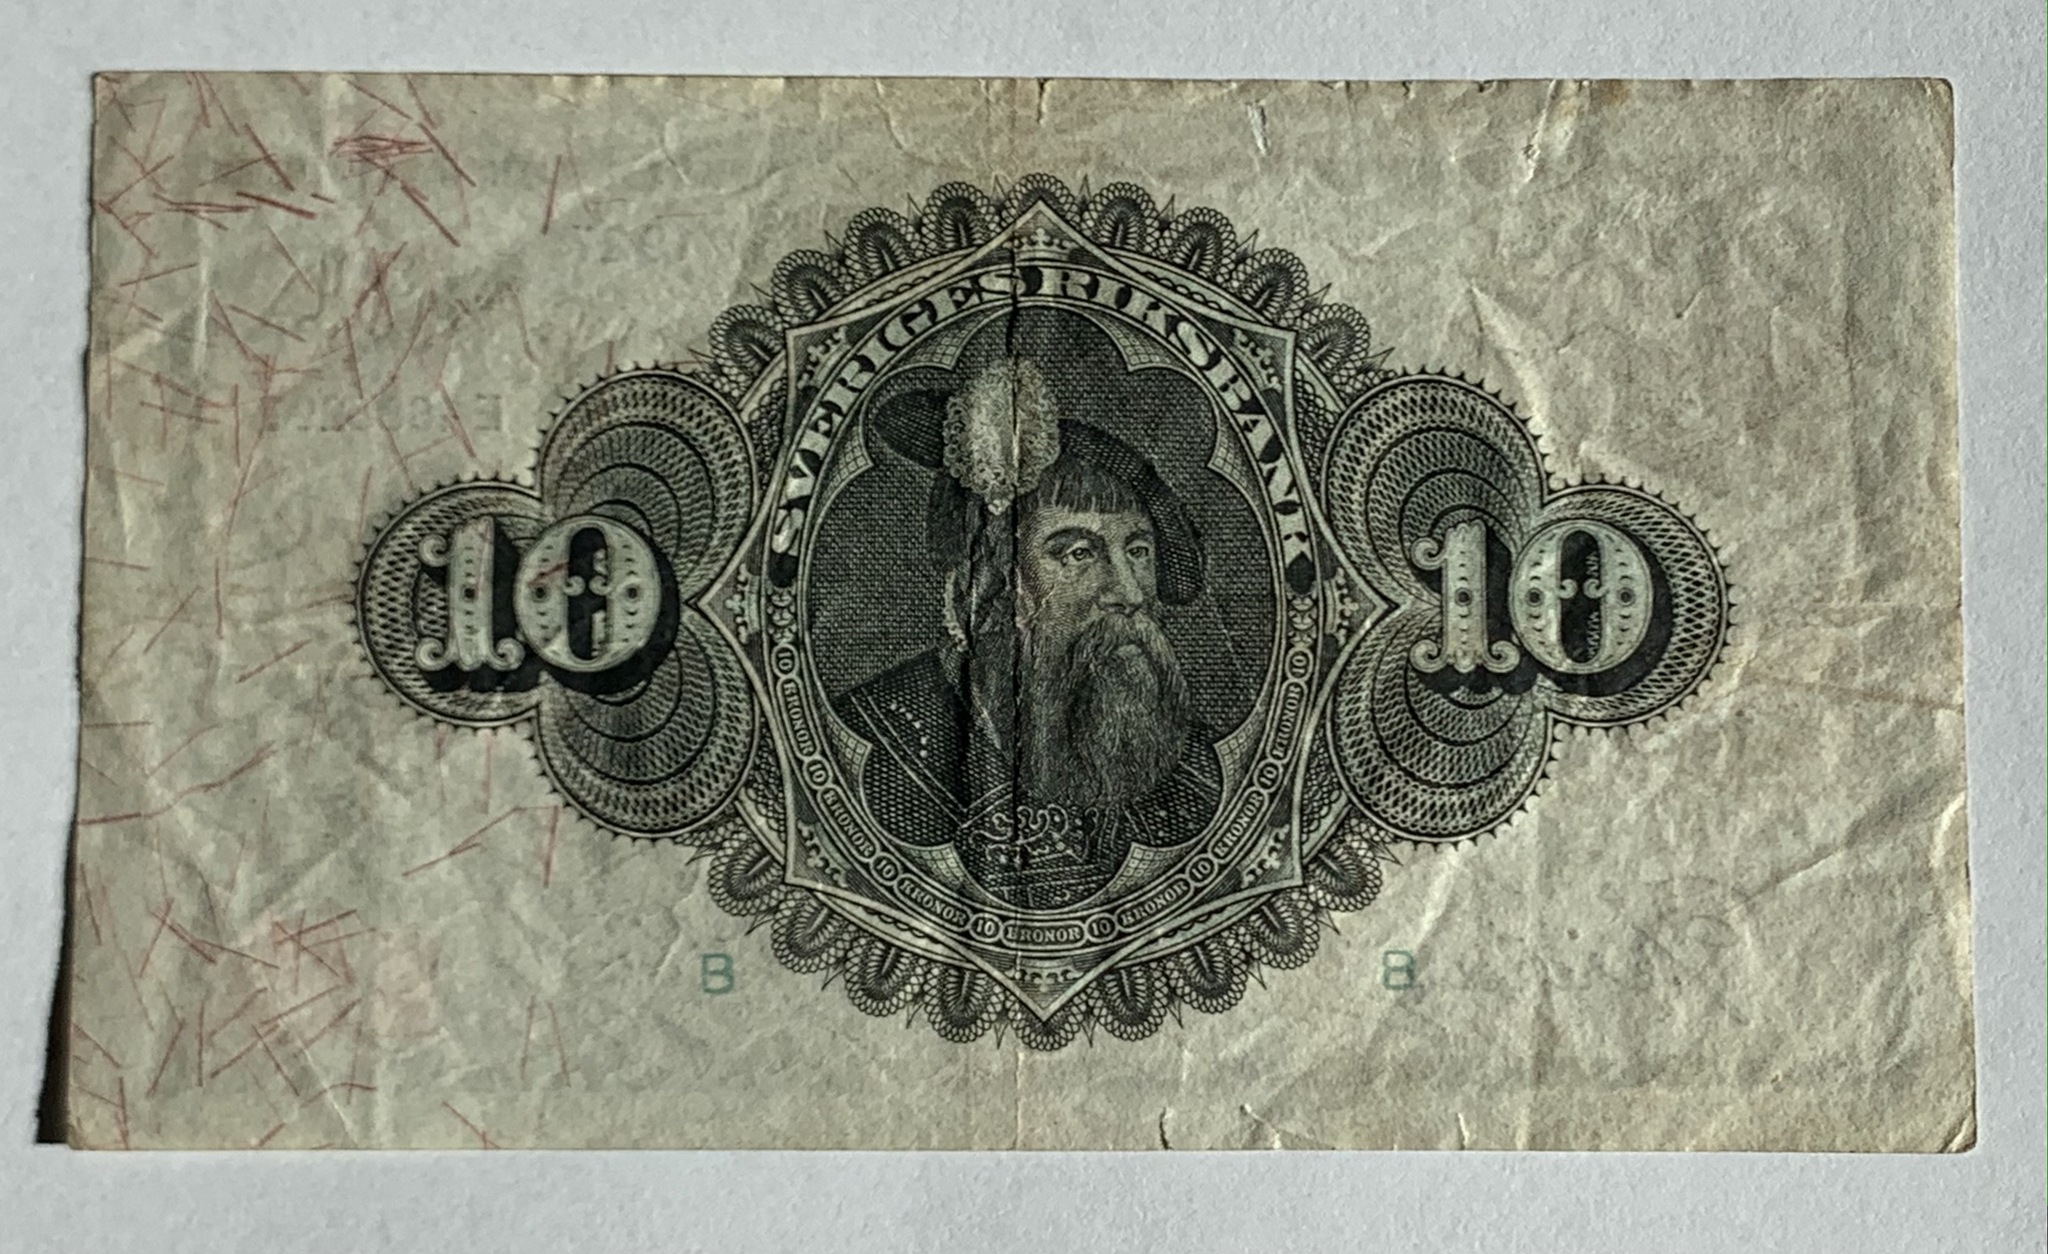 10 kronor 1927